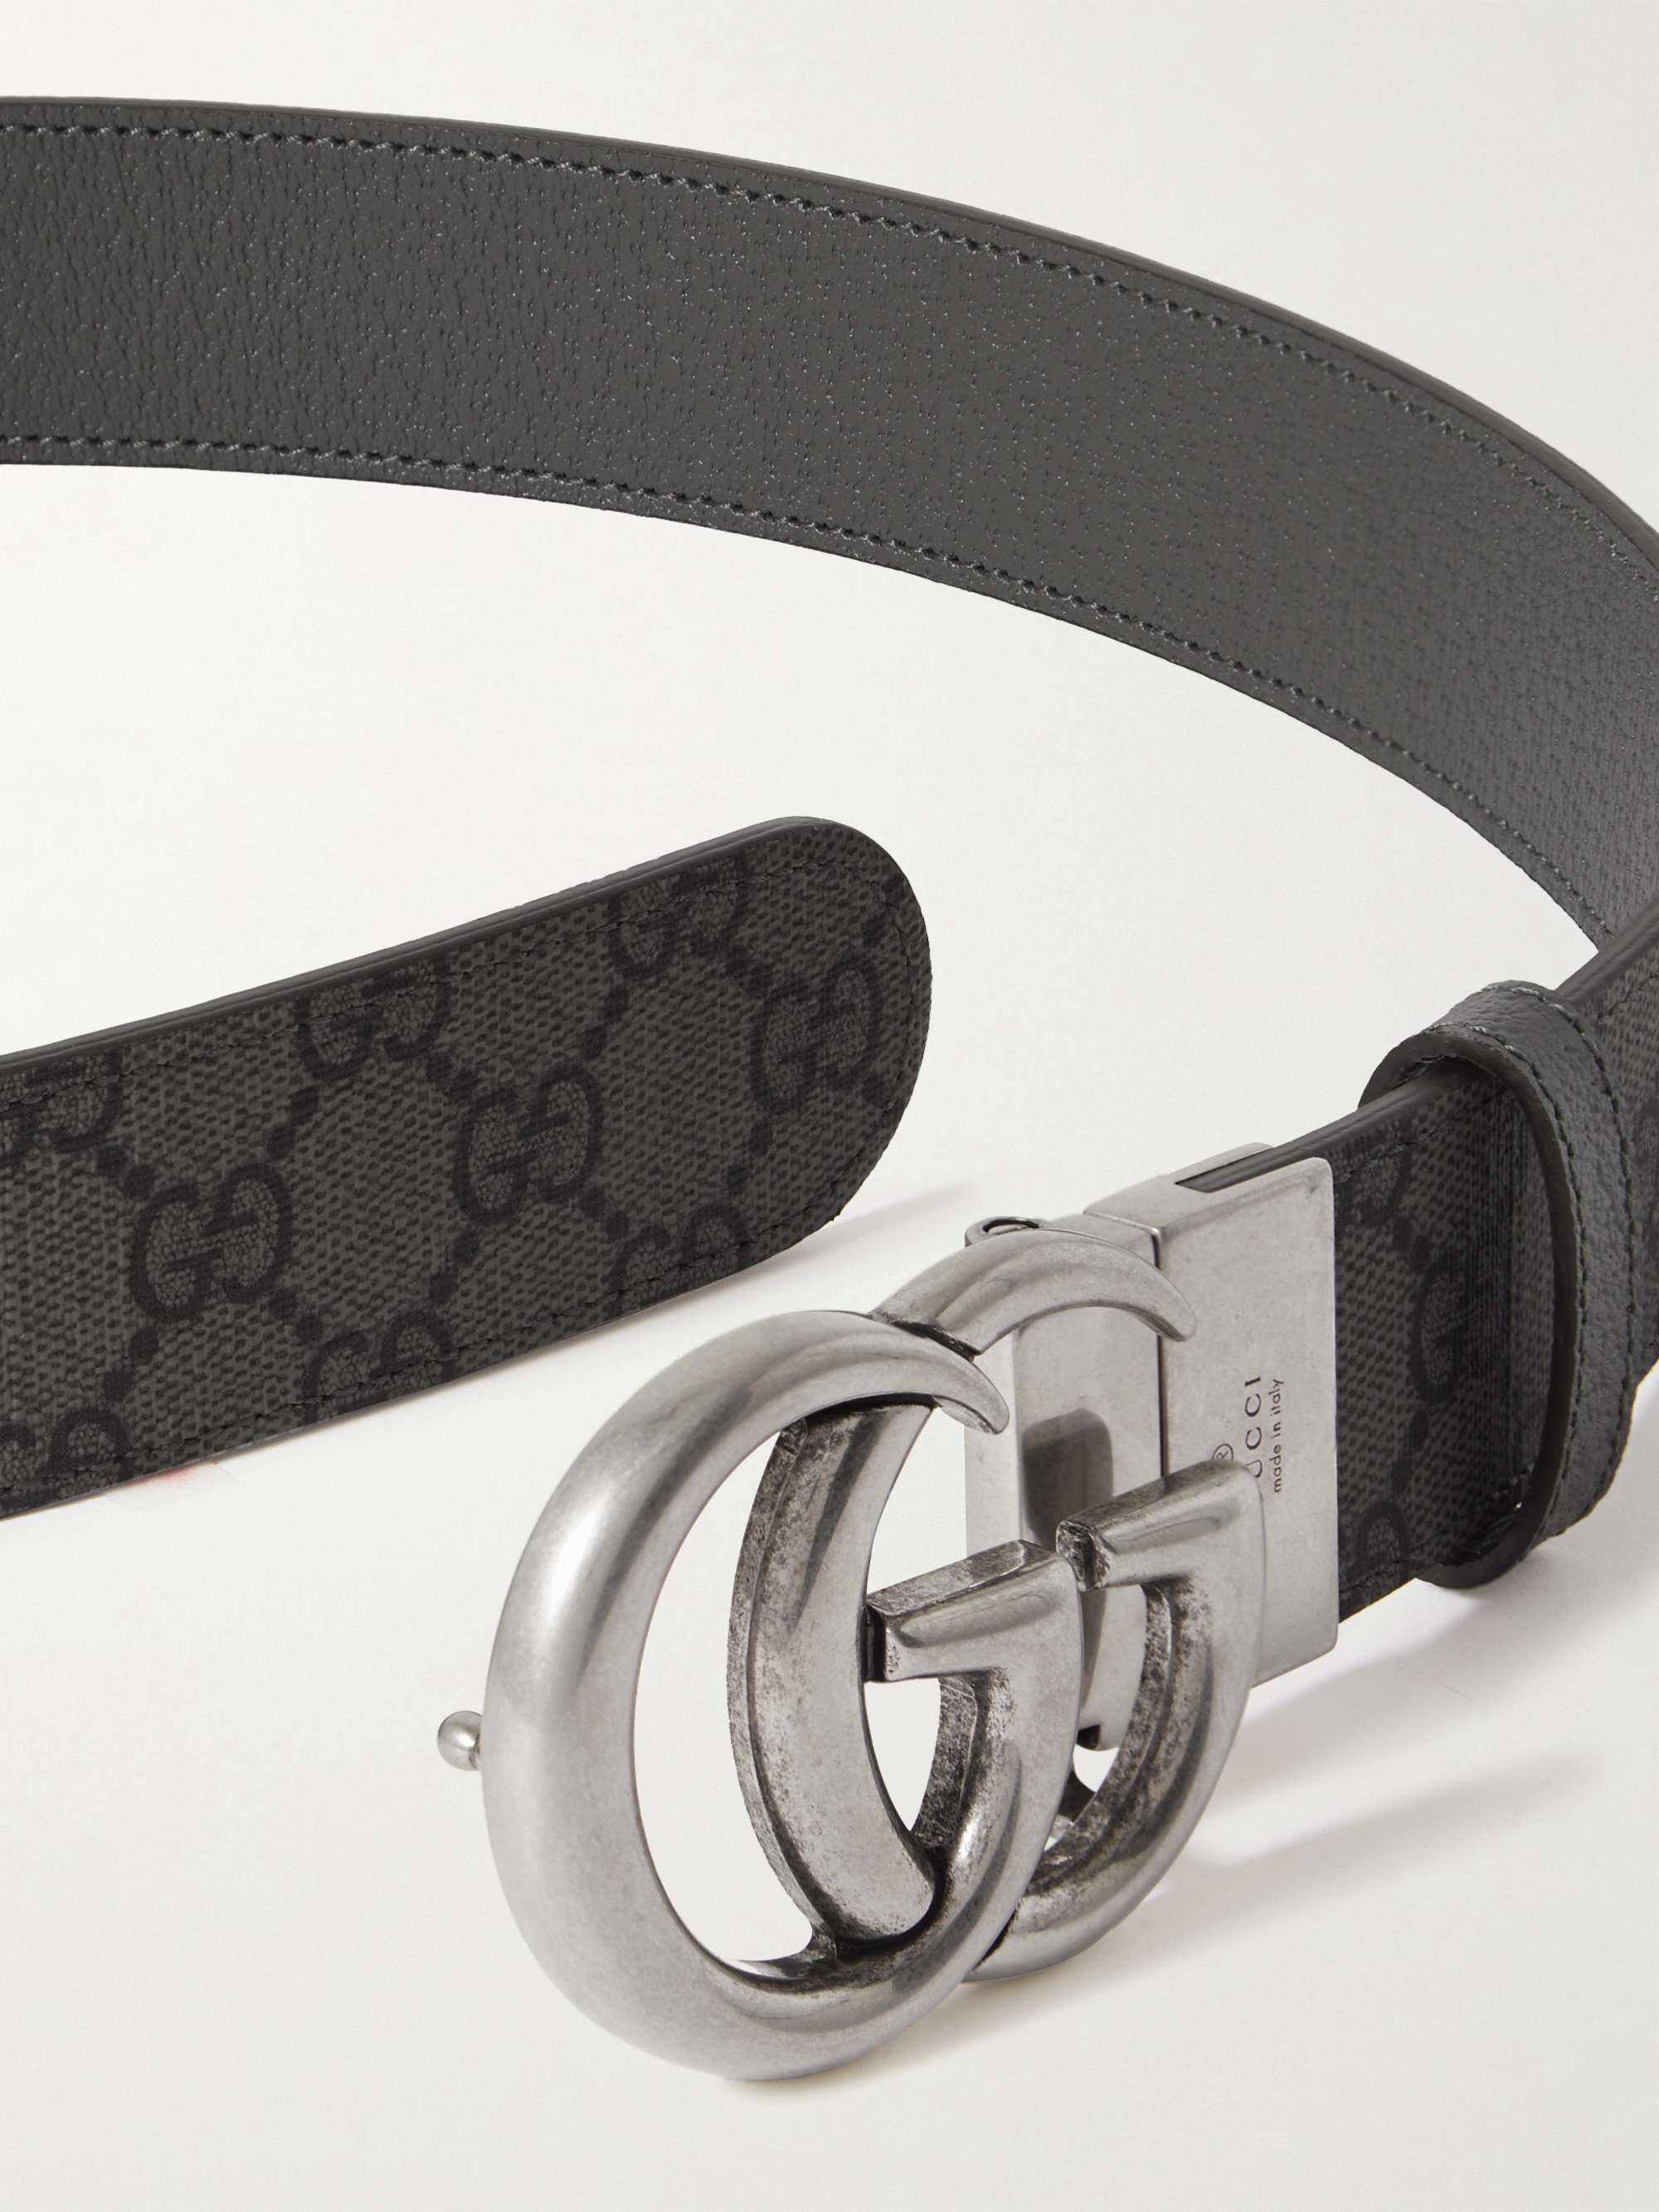 GUCCI Cintura reversibile in tela spalmata con monogramma Marmont, 3,5 cm